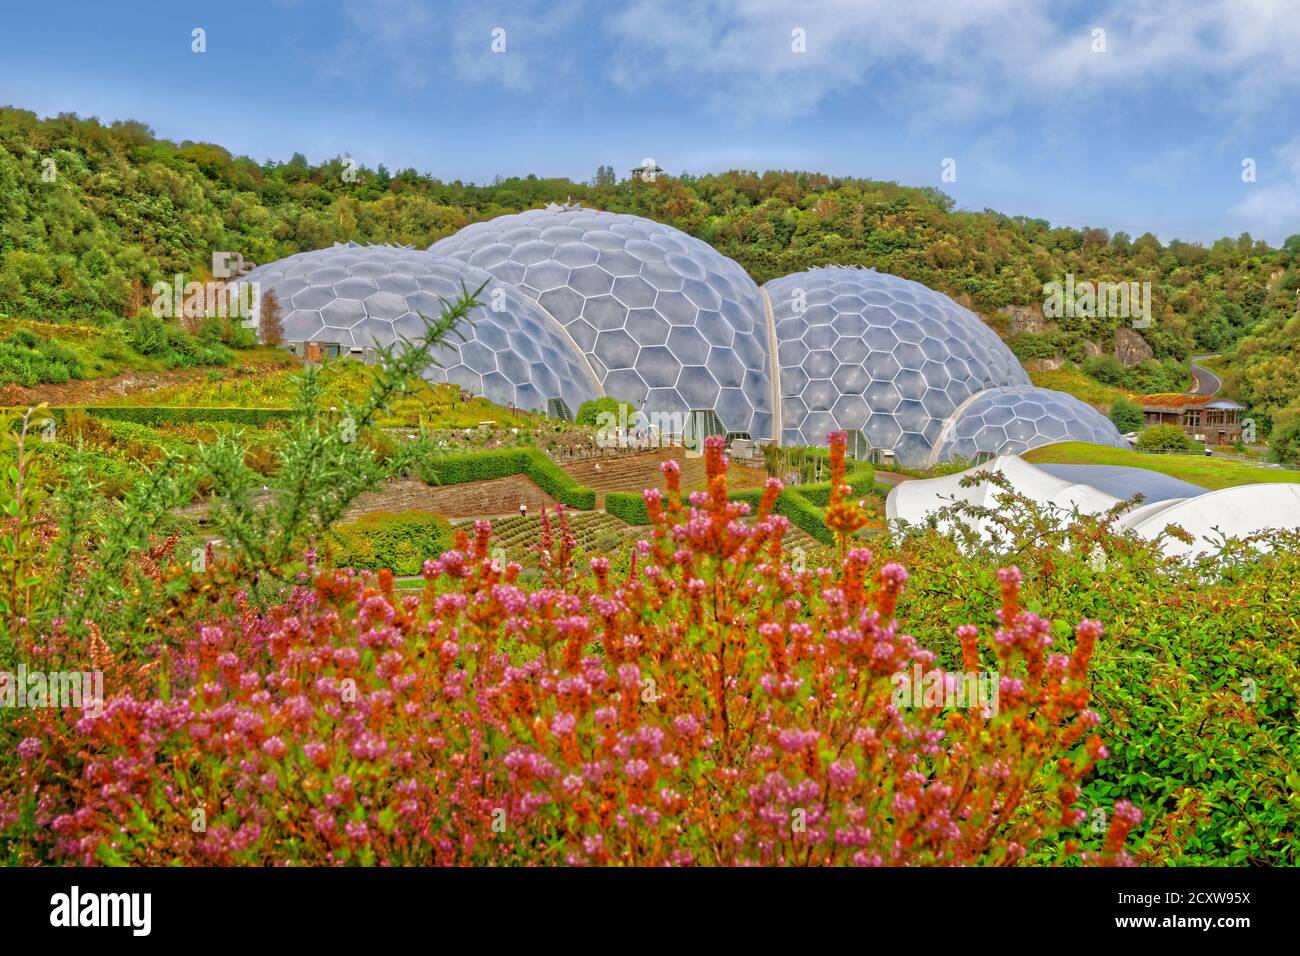 The Eden Project Biomes, Bodelva vicino a St. Austell, Cornovaglia, Inghilterra. Foto Stock